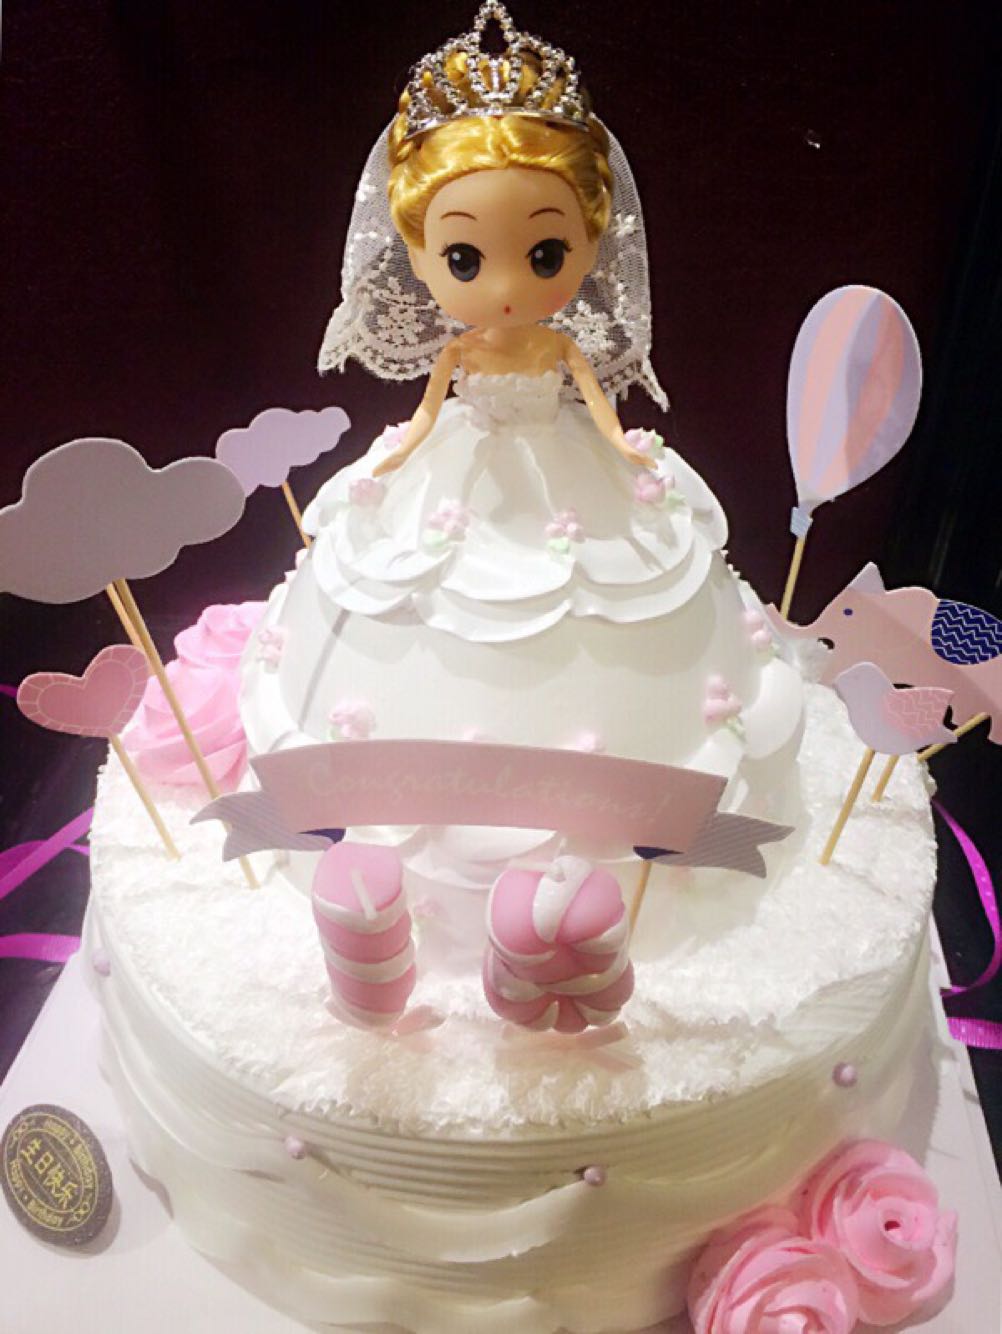 上海宝宝小迷糊生日蛋糕 儿童芭比小公主婚纱造型个性